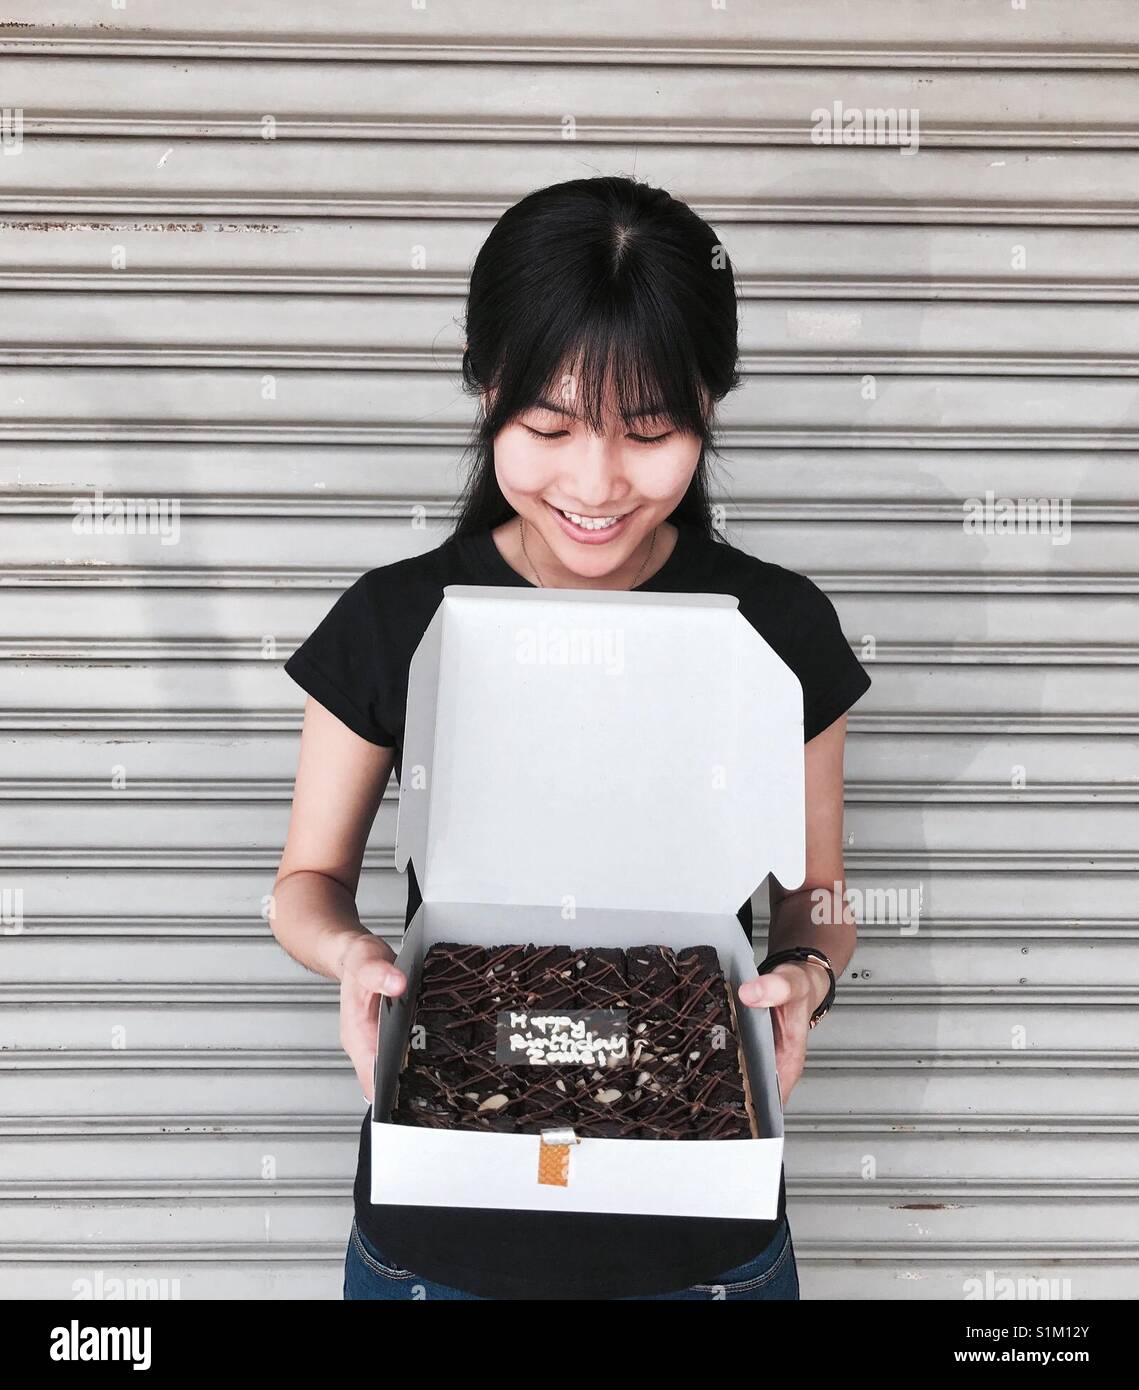 Compleanno ragazza che ha ricevuto una scatola di cioccolatini B R O W N I E S dalla sua chiesa gli amici. Foto Stock